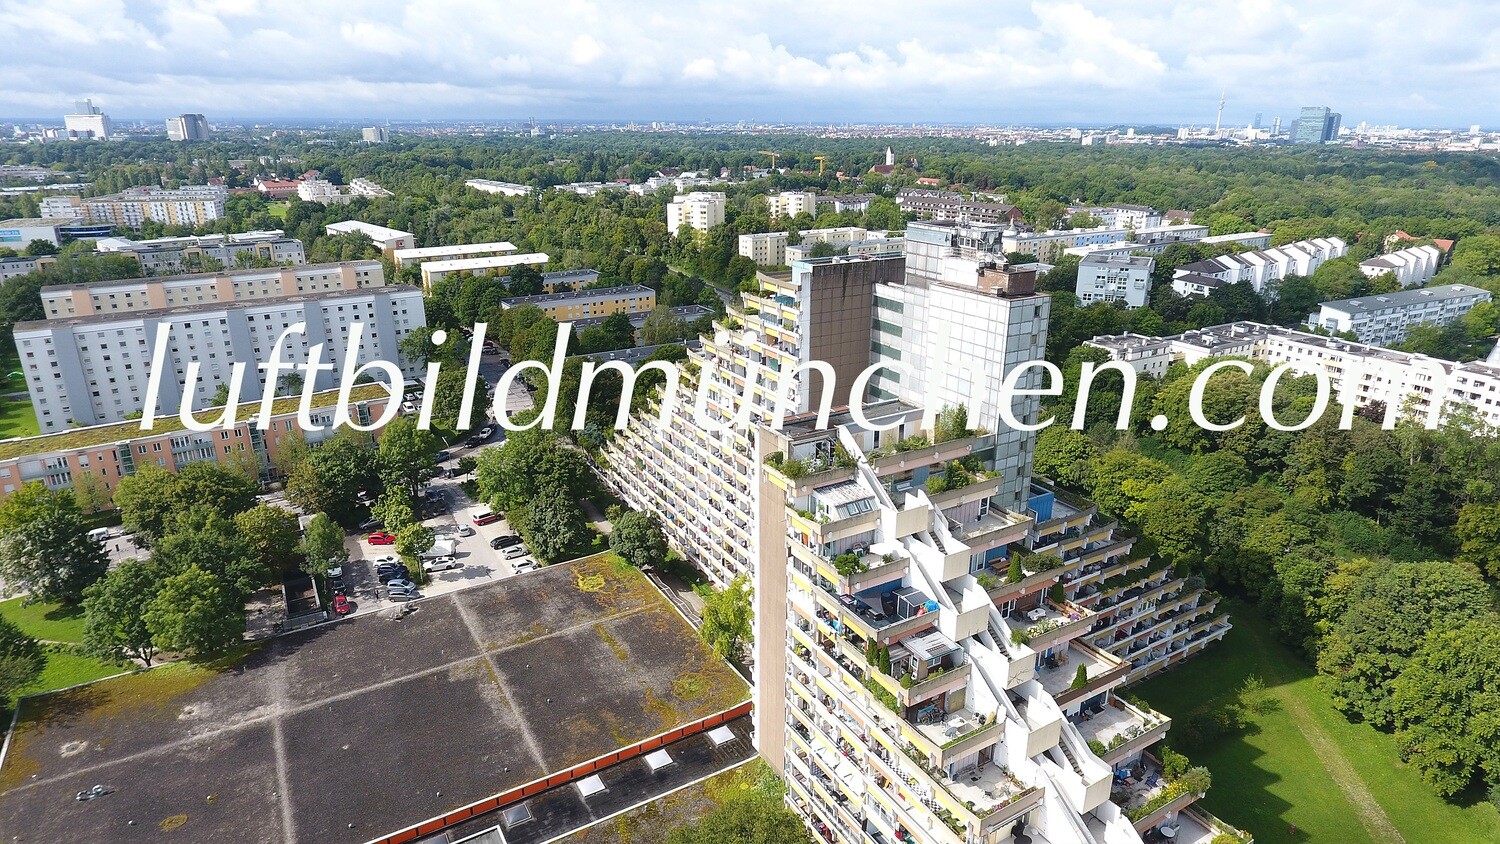 Luftbildfoto, Luftaufnahme, Luftbild, Foto mit Drohne, München, Foto von oben, Wohngebiet, Oberfoehring, Pharaohaus, Heizkraftwerk,